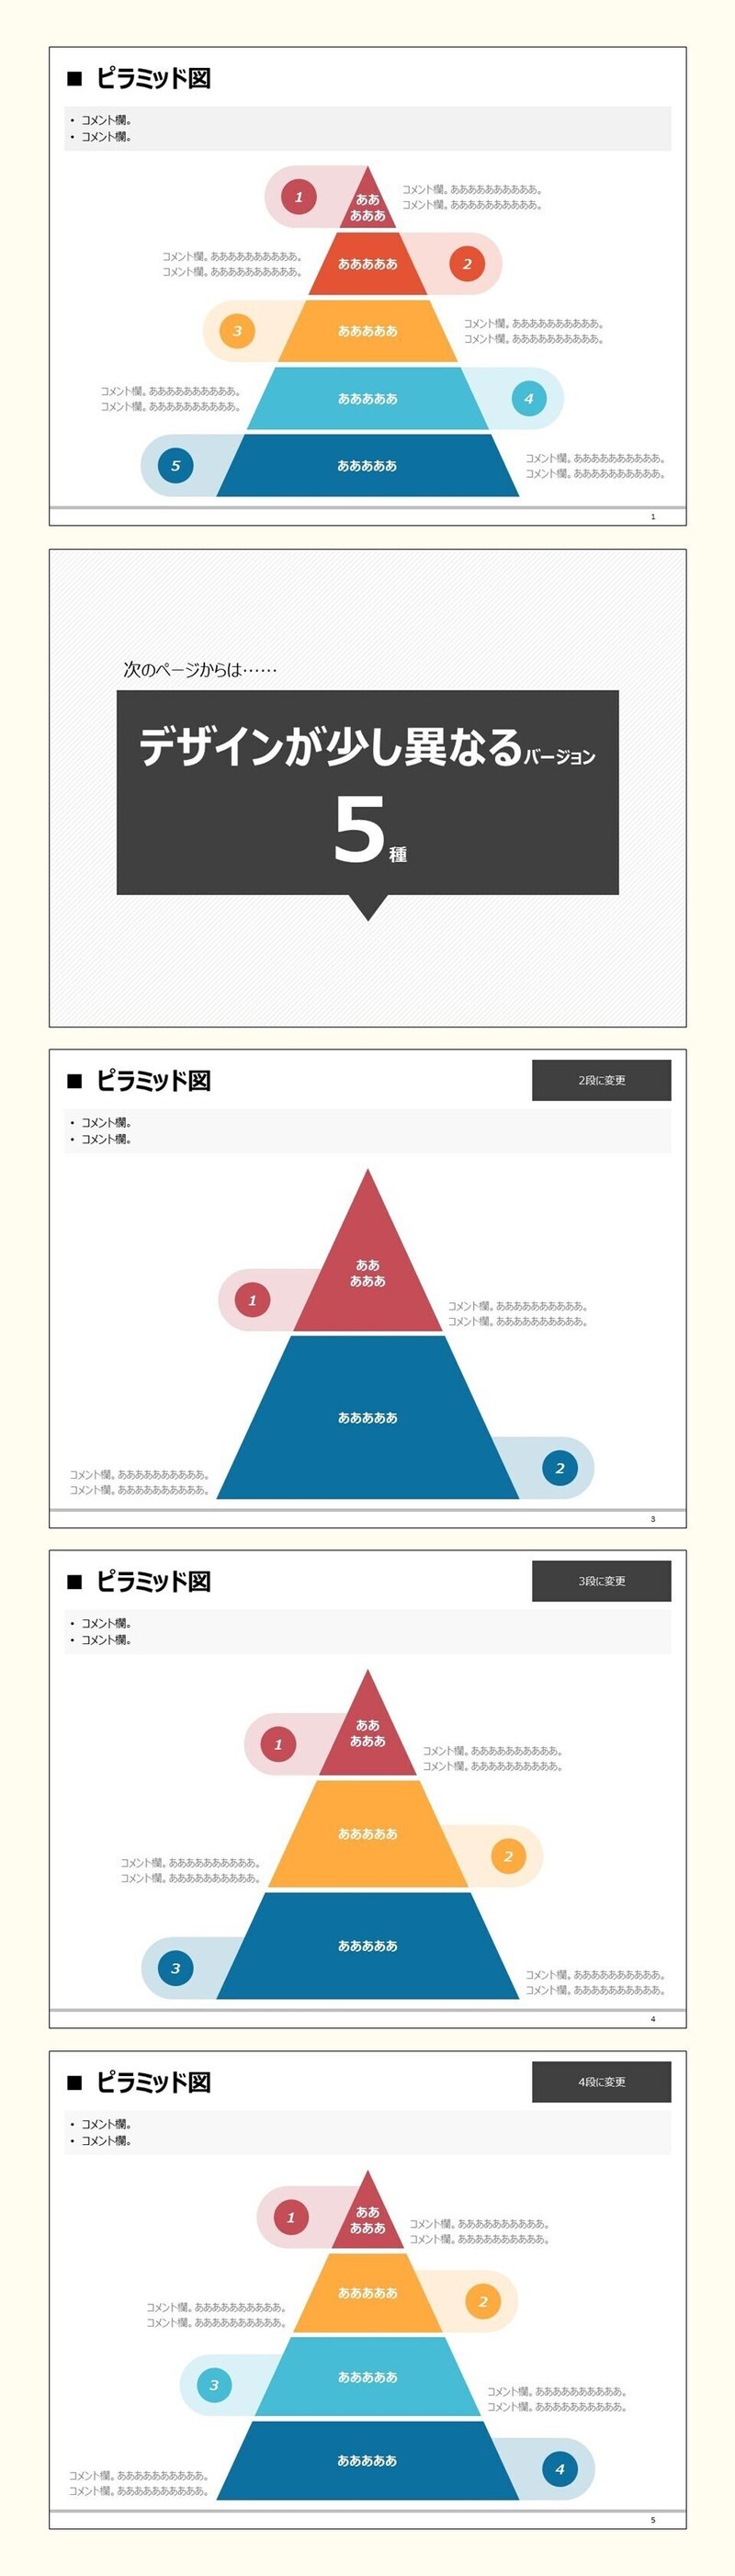 2_contents_入れ子状の階層番号とコメント欄がかわいいピラミッド図のテンプレ-1-1